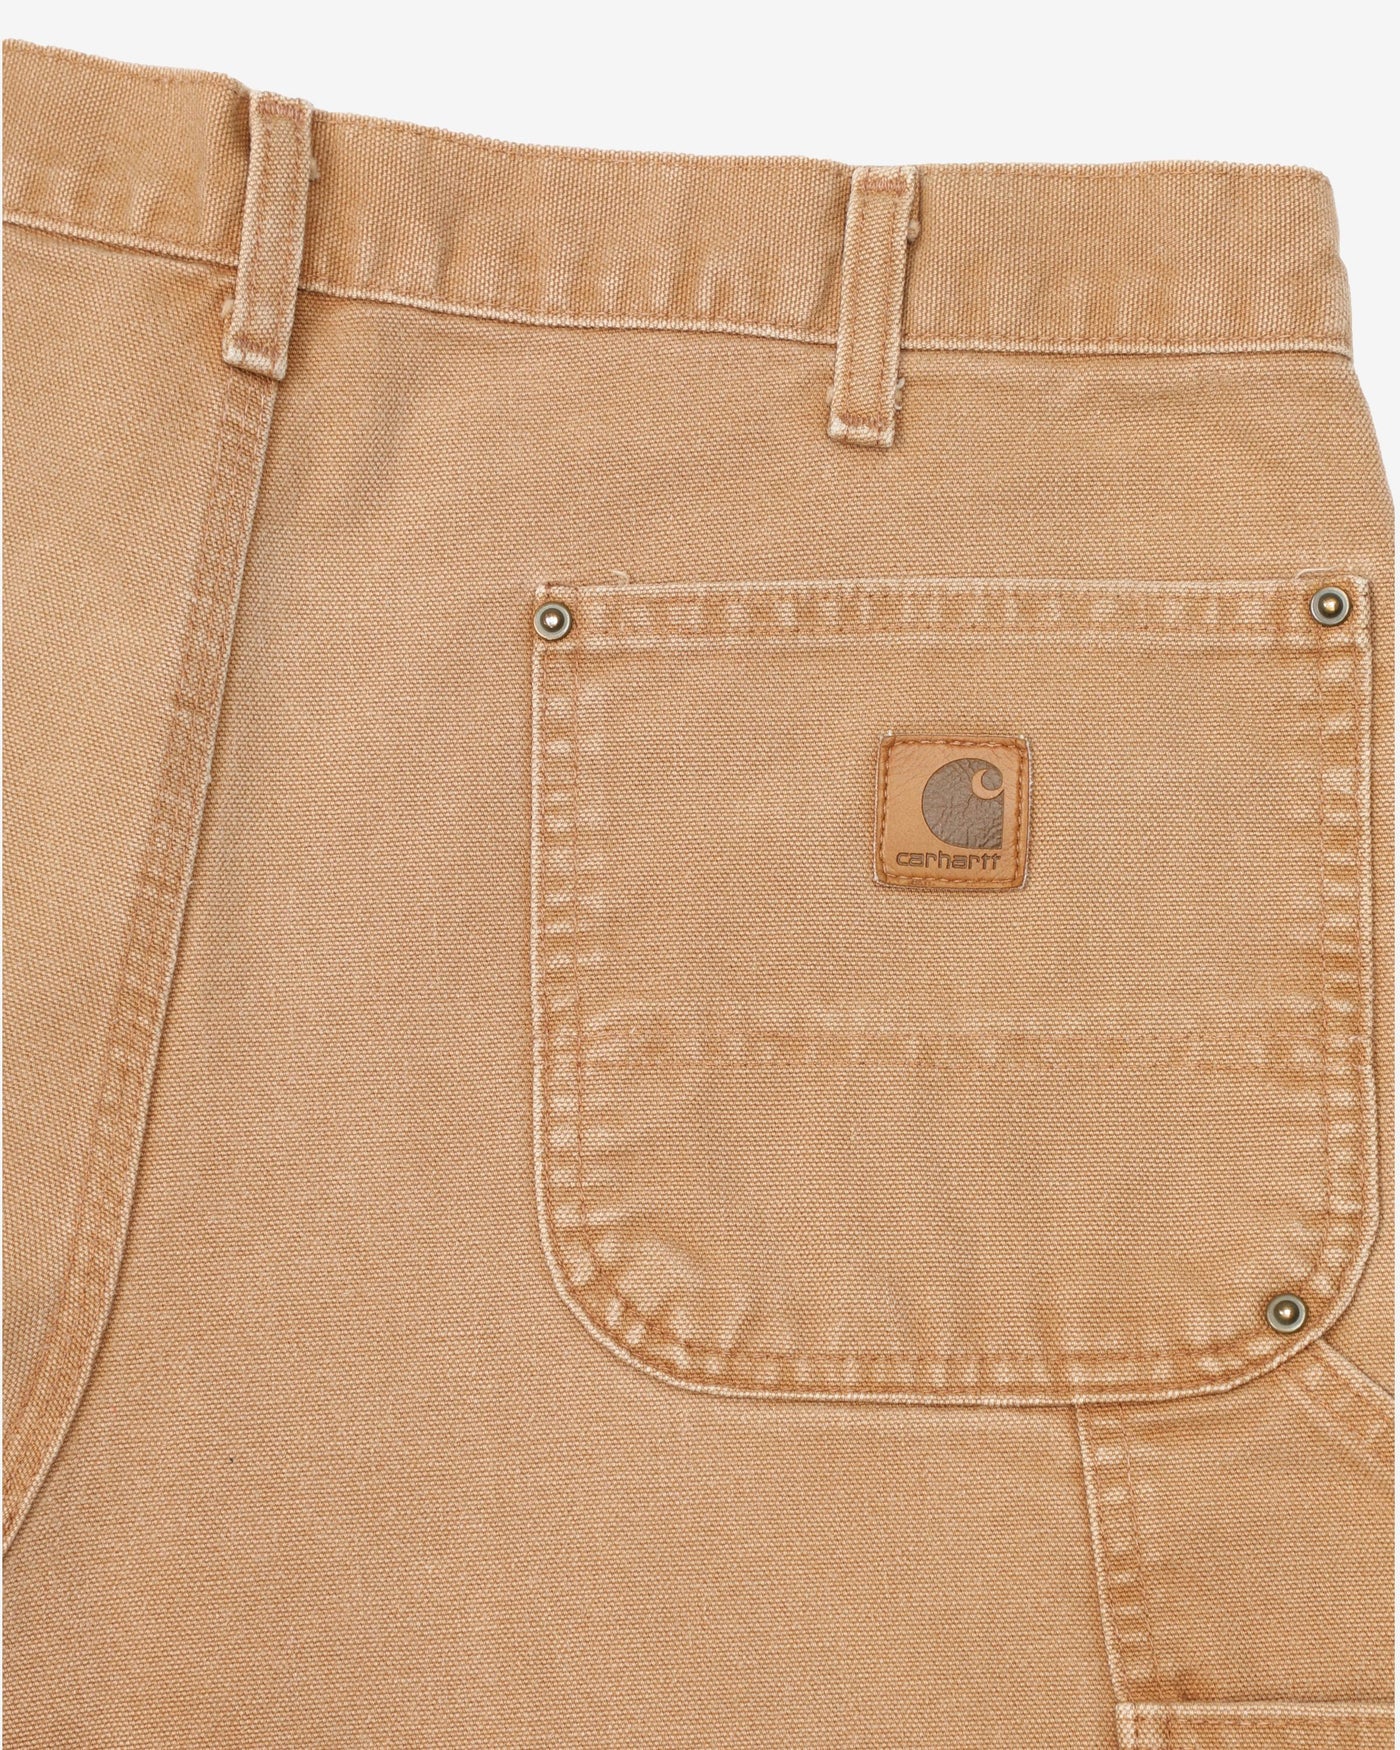 Vintage Double Knee Tan / Beige Carhartt Workwear Utility Jeans - W36 L30